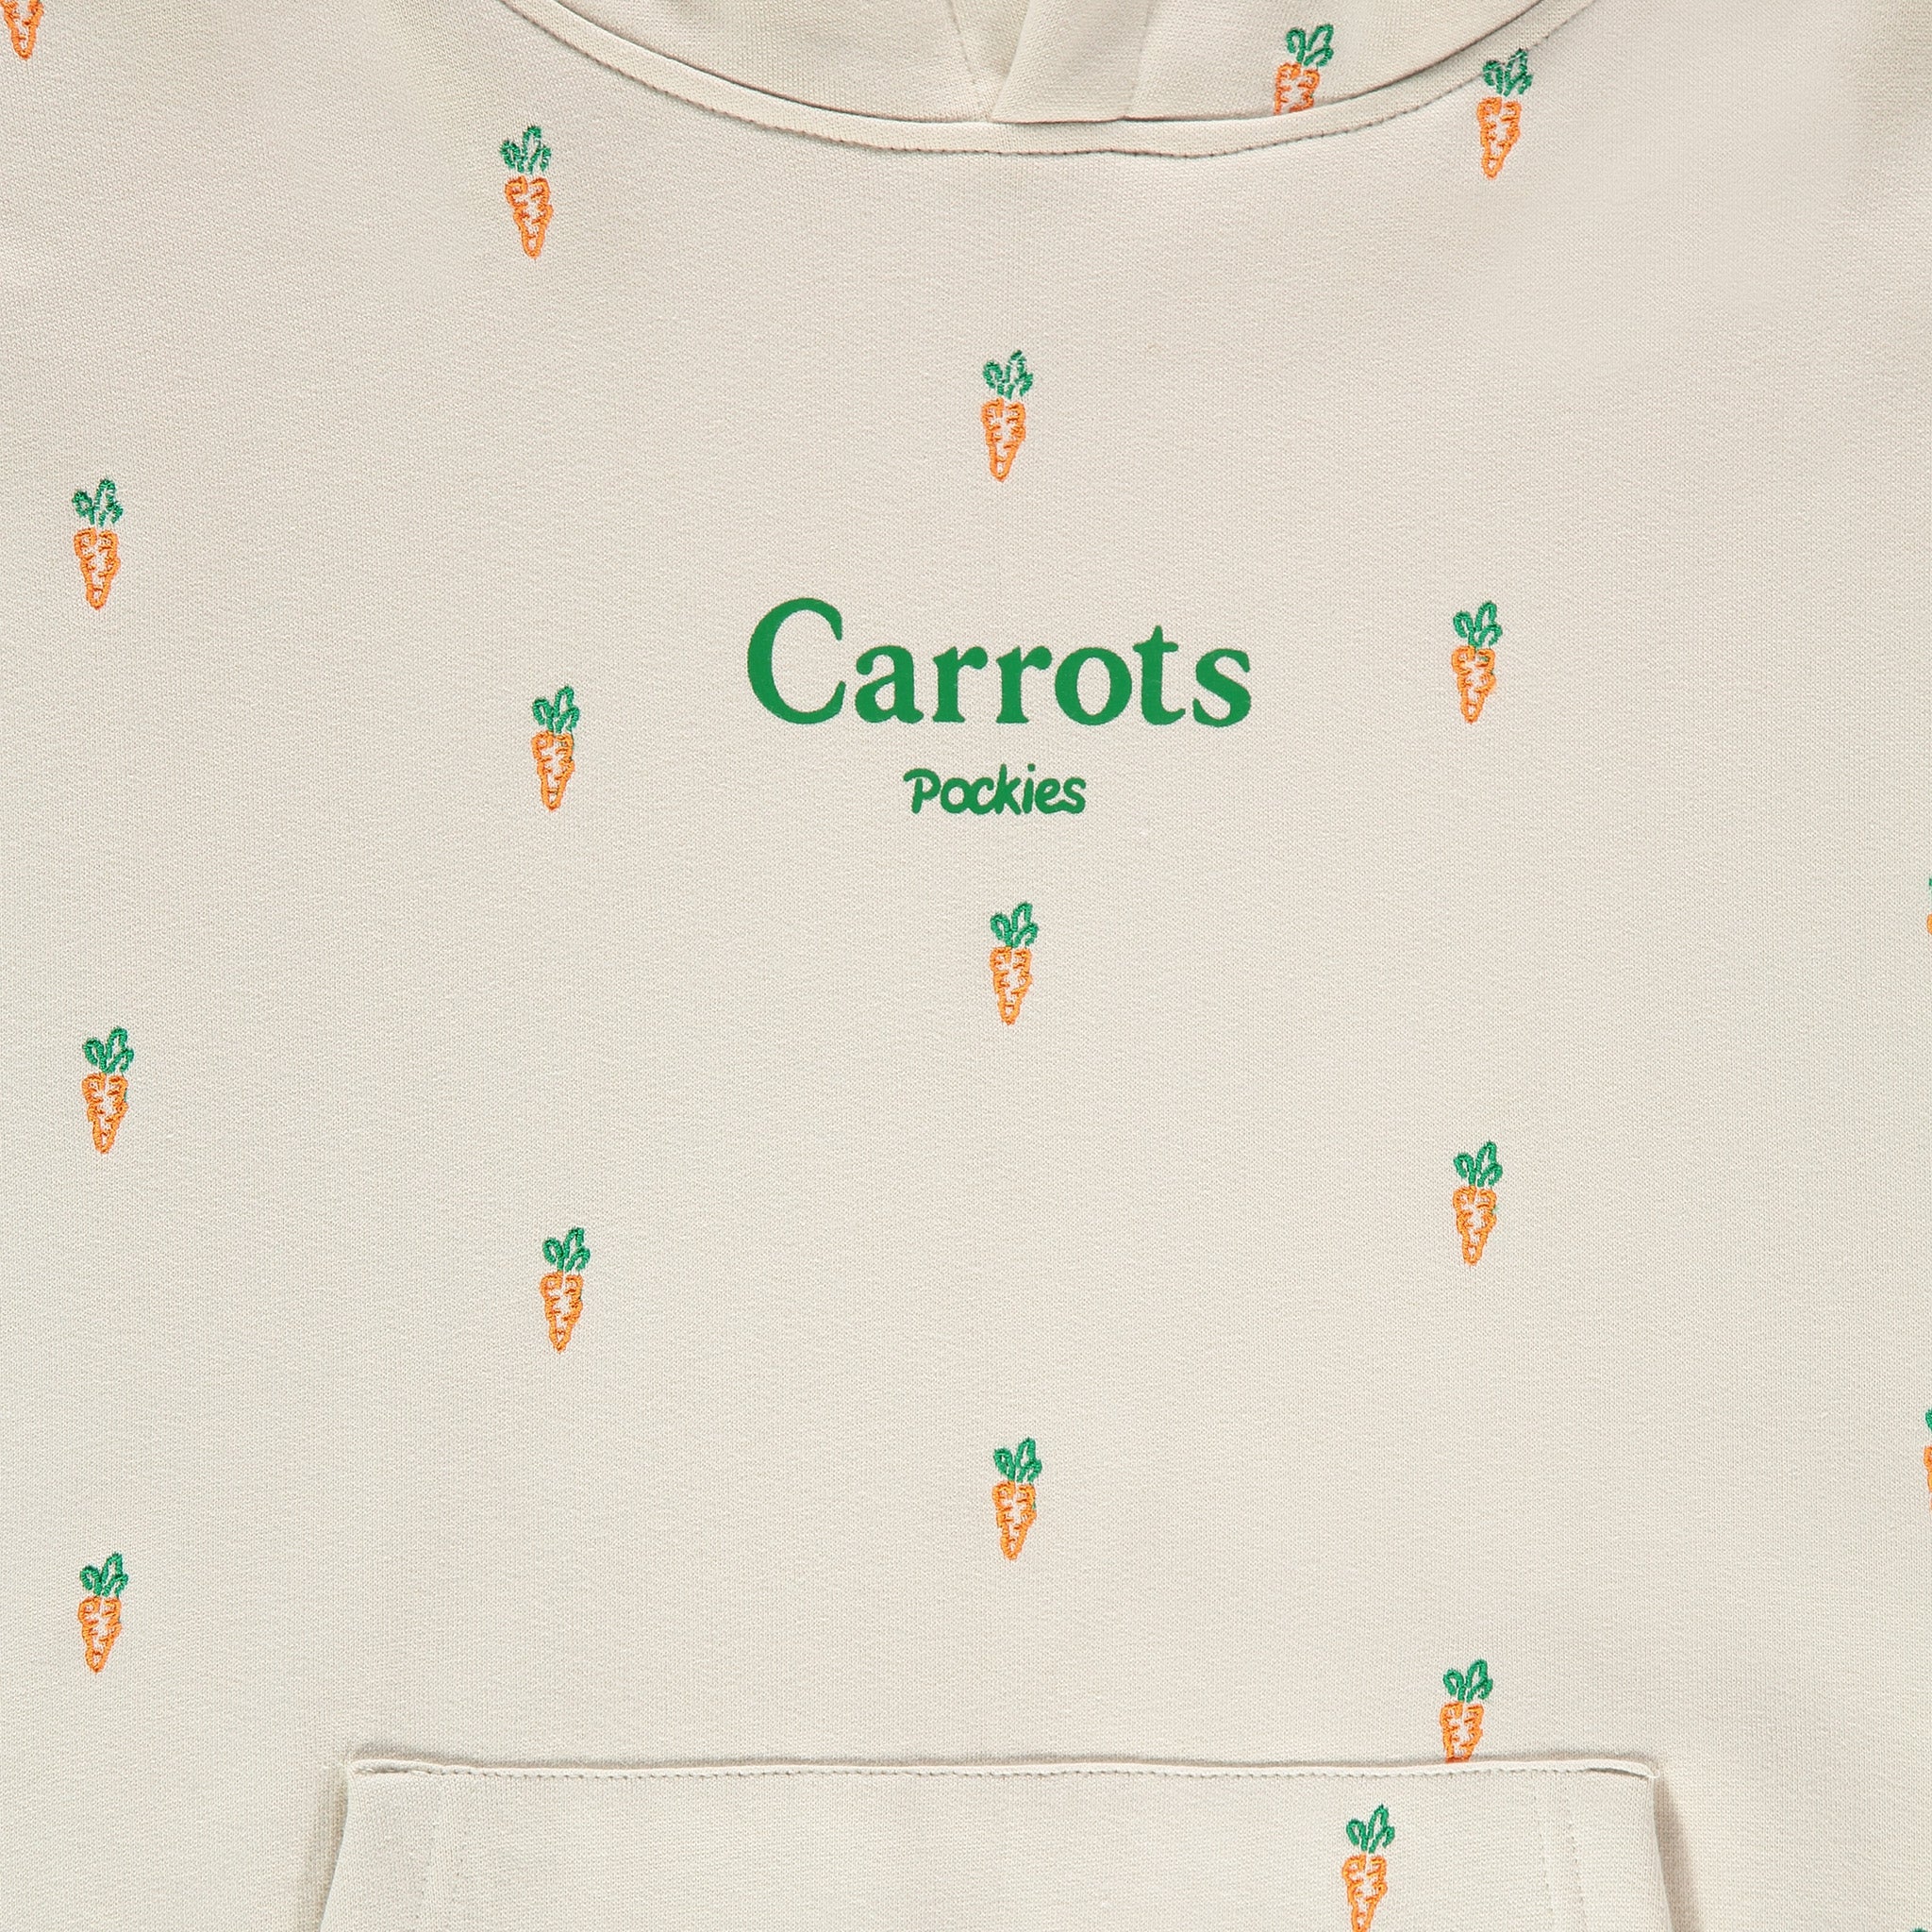 Carrots by Pockies Hoodie